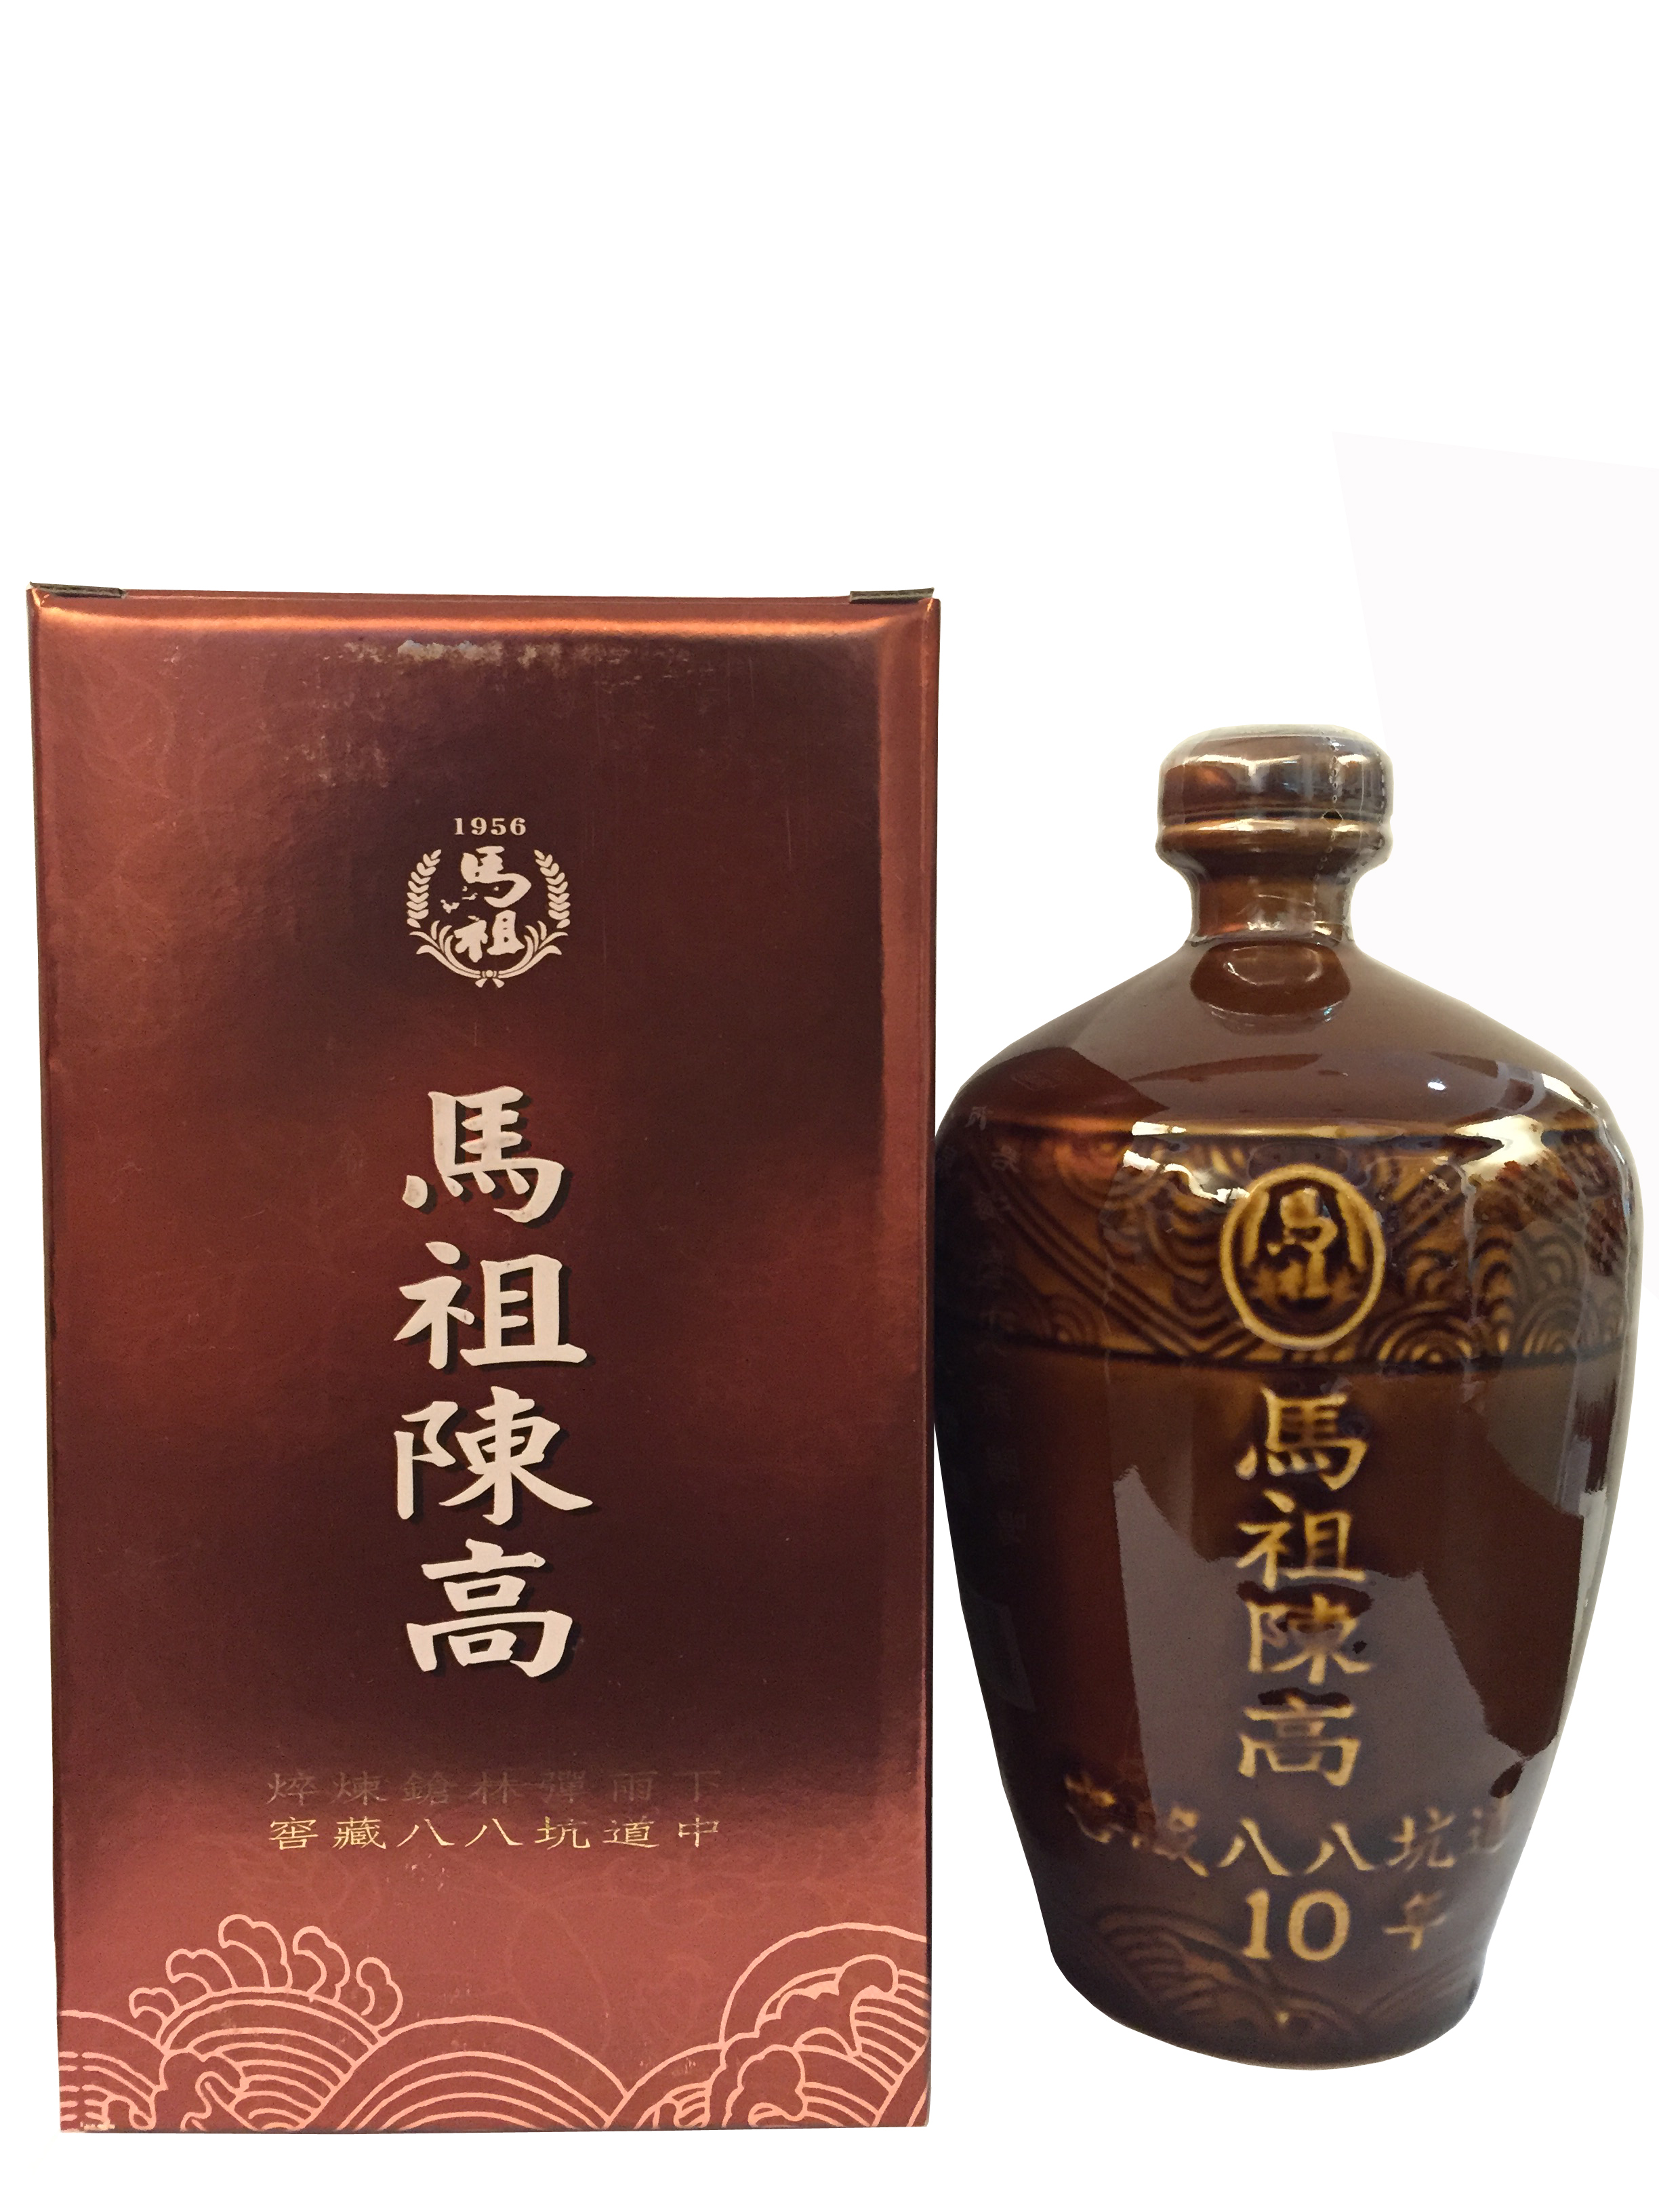 馬祖陳年高粱(八八坑道10年褐罈)  馬祖陳高老酒系列